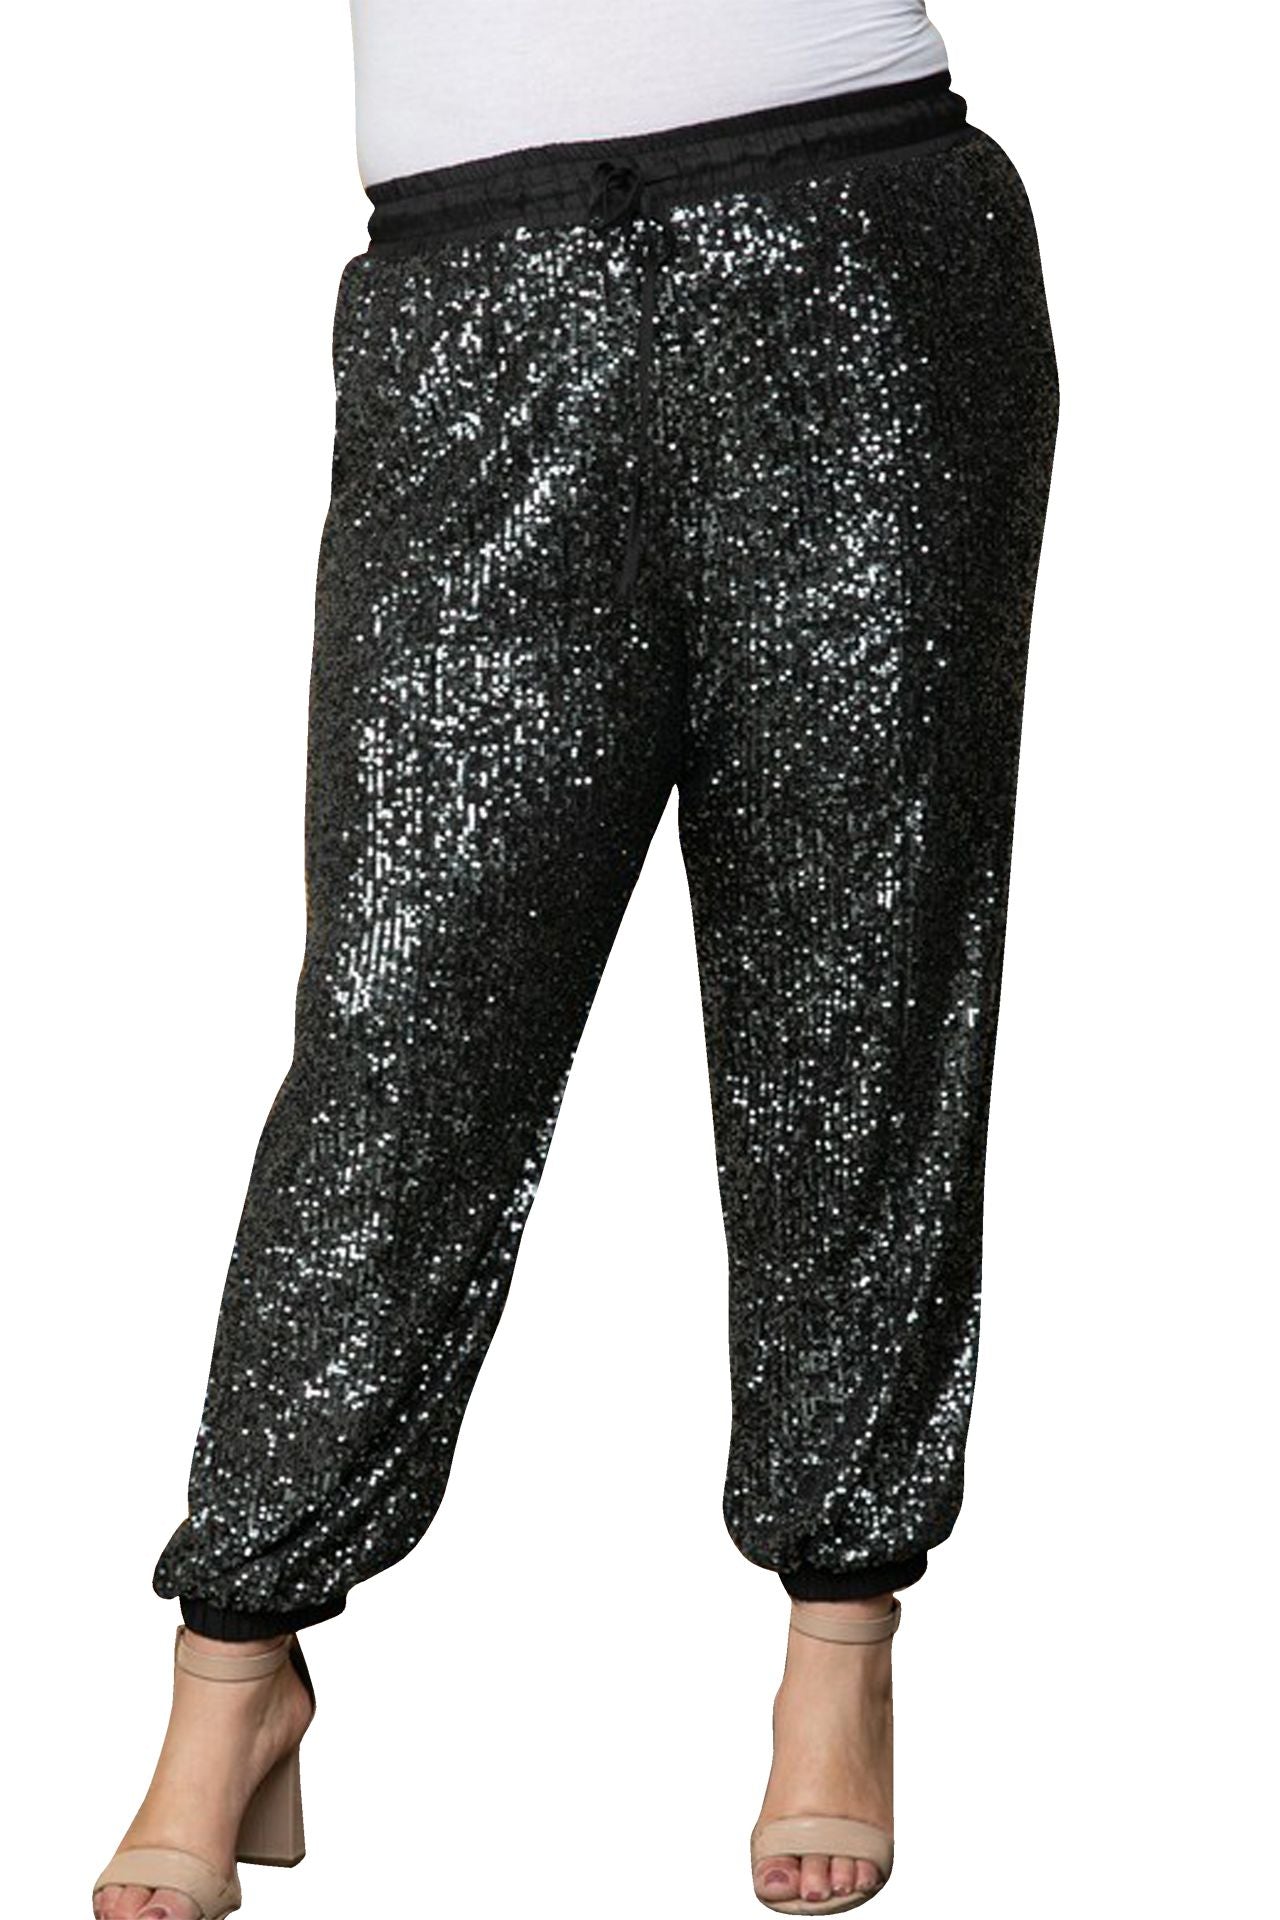 "sequin pants jogger" "sequin jogging bottoms" "Kyle X Shahida" "plus size sequin jogger pants" "black sequins joggers"